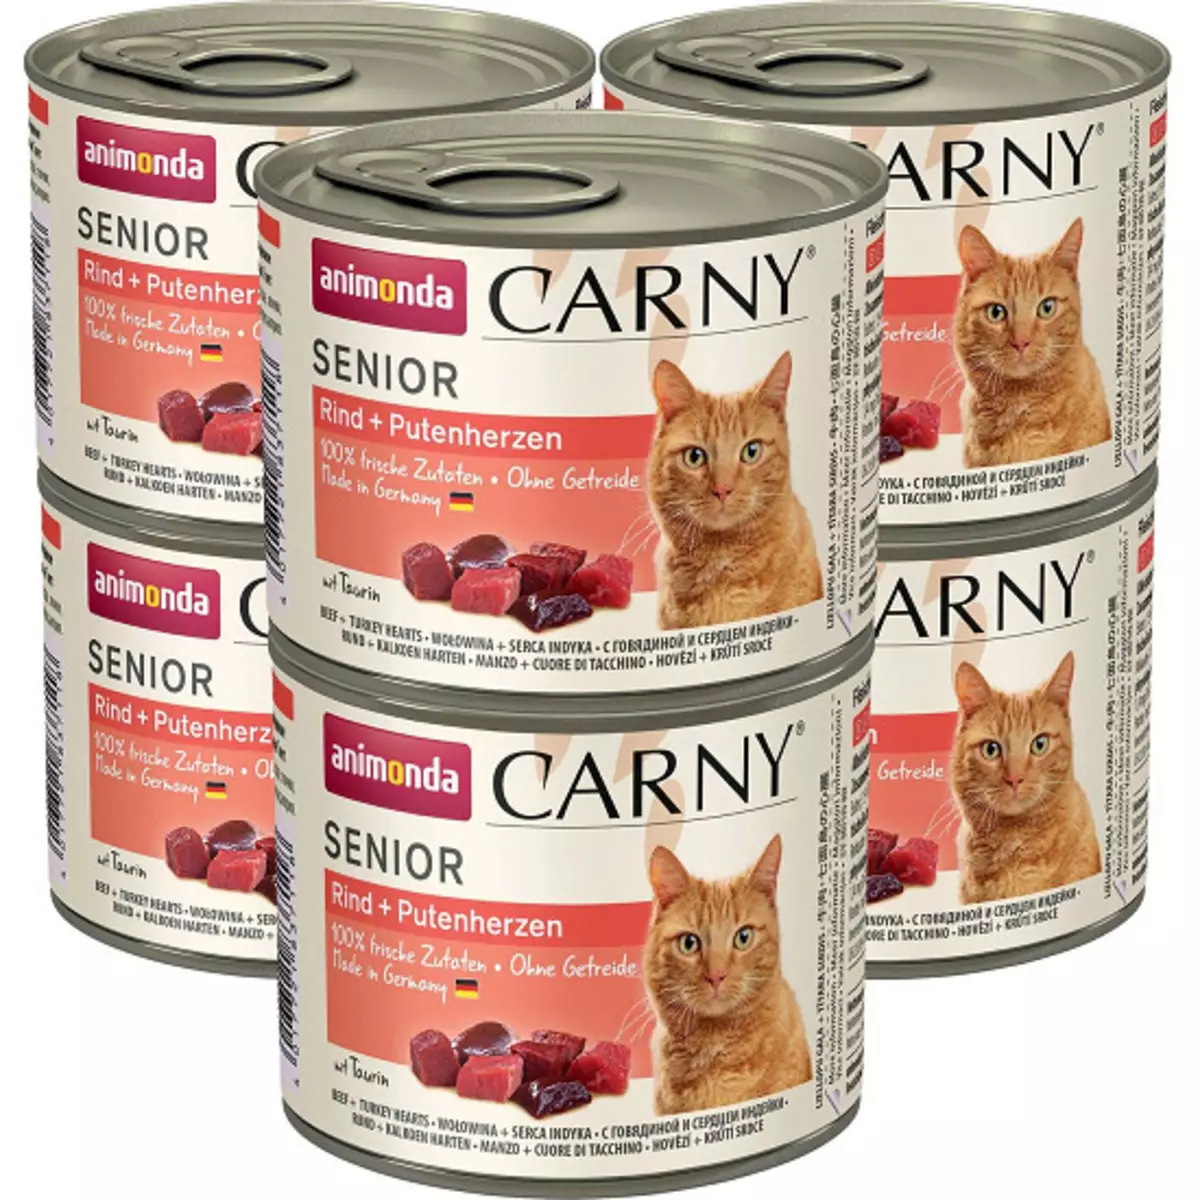 Animonda Feed: Pro kočky a psy, mokré a suché, kočičí konzervované potraviny pro dospělé kočky a koťata, složení a recenze 22112_18